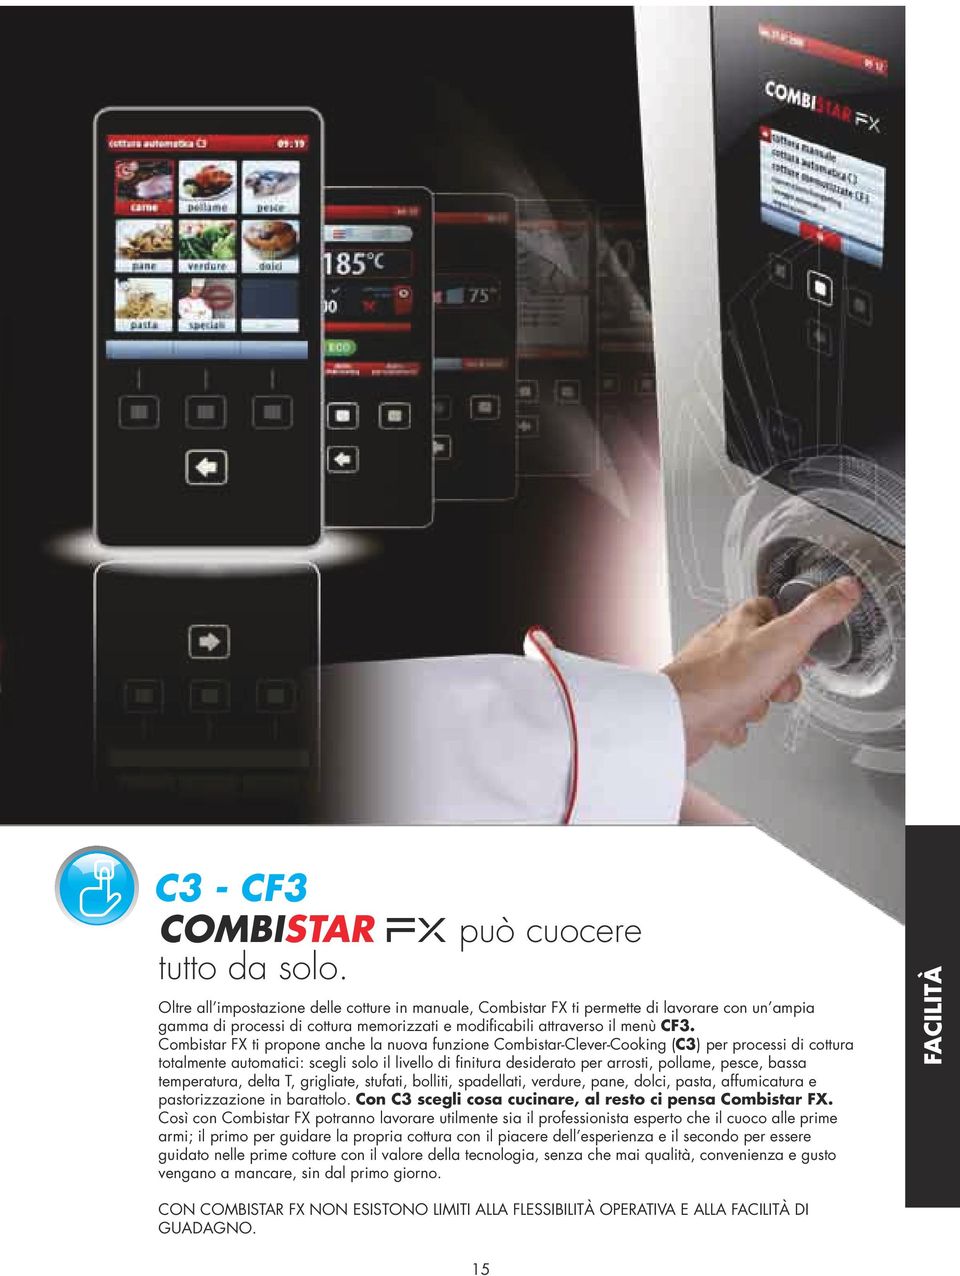 Combistar FX ti propone anche la nuova funzione Combistar-Clever-Cooking (C3) per processi di cottura totalmente automatici: scegli solo il livello di finitura desiderato per arrosti, pollame, pesce,